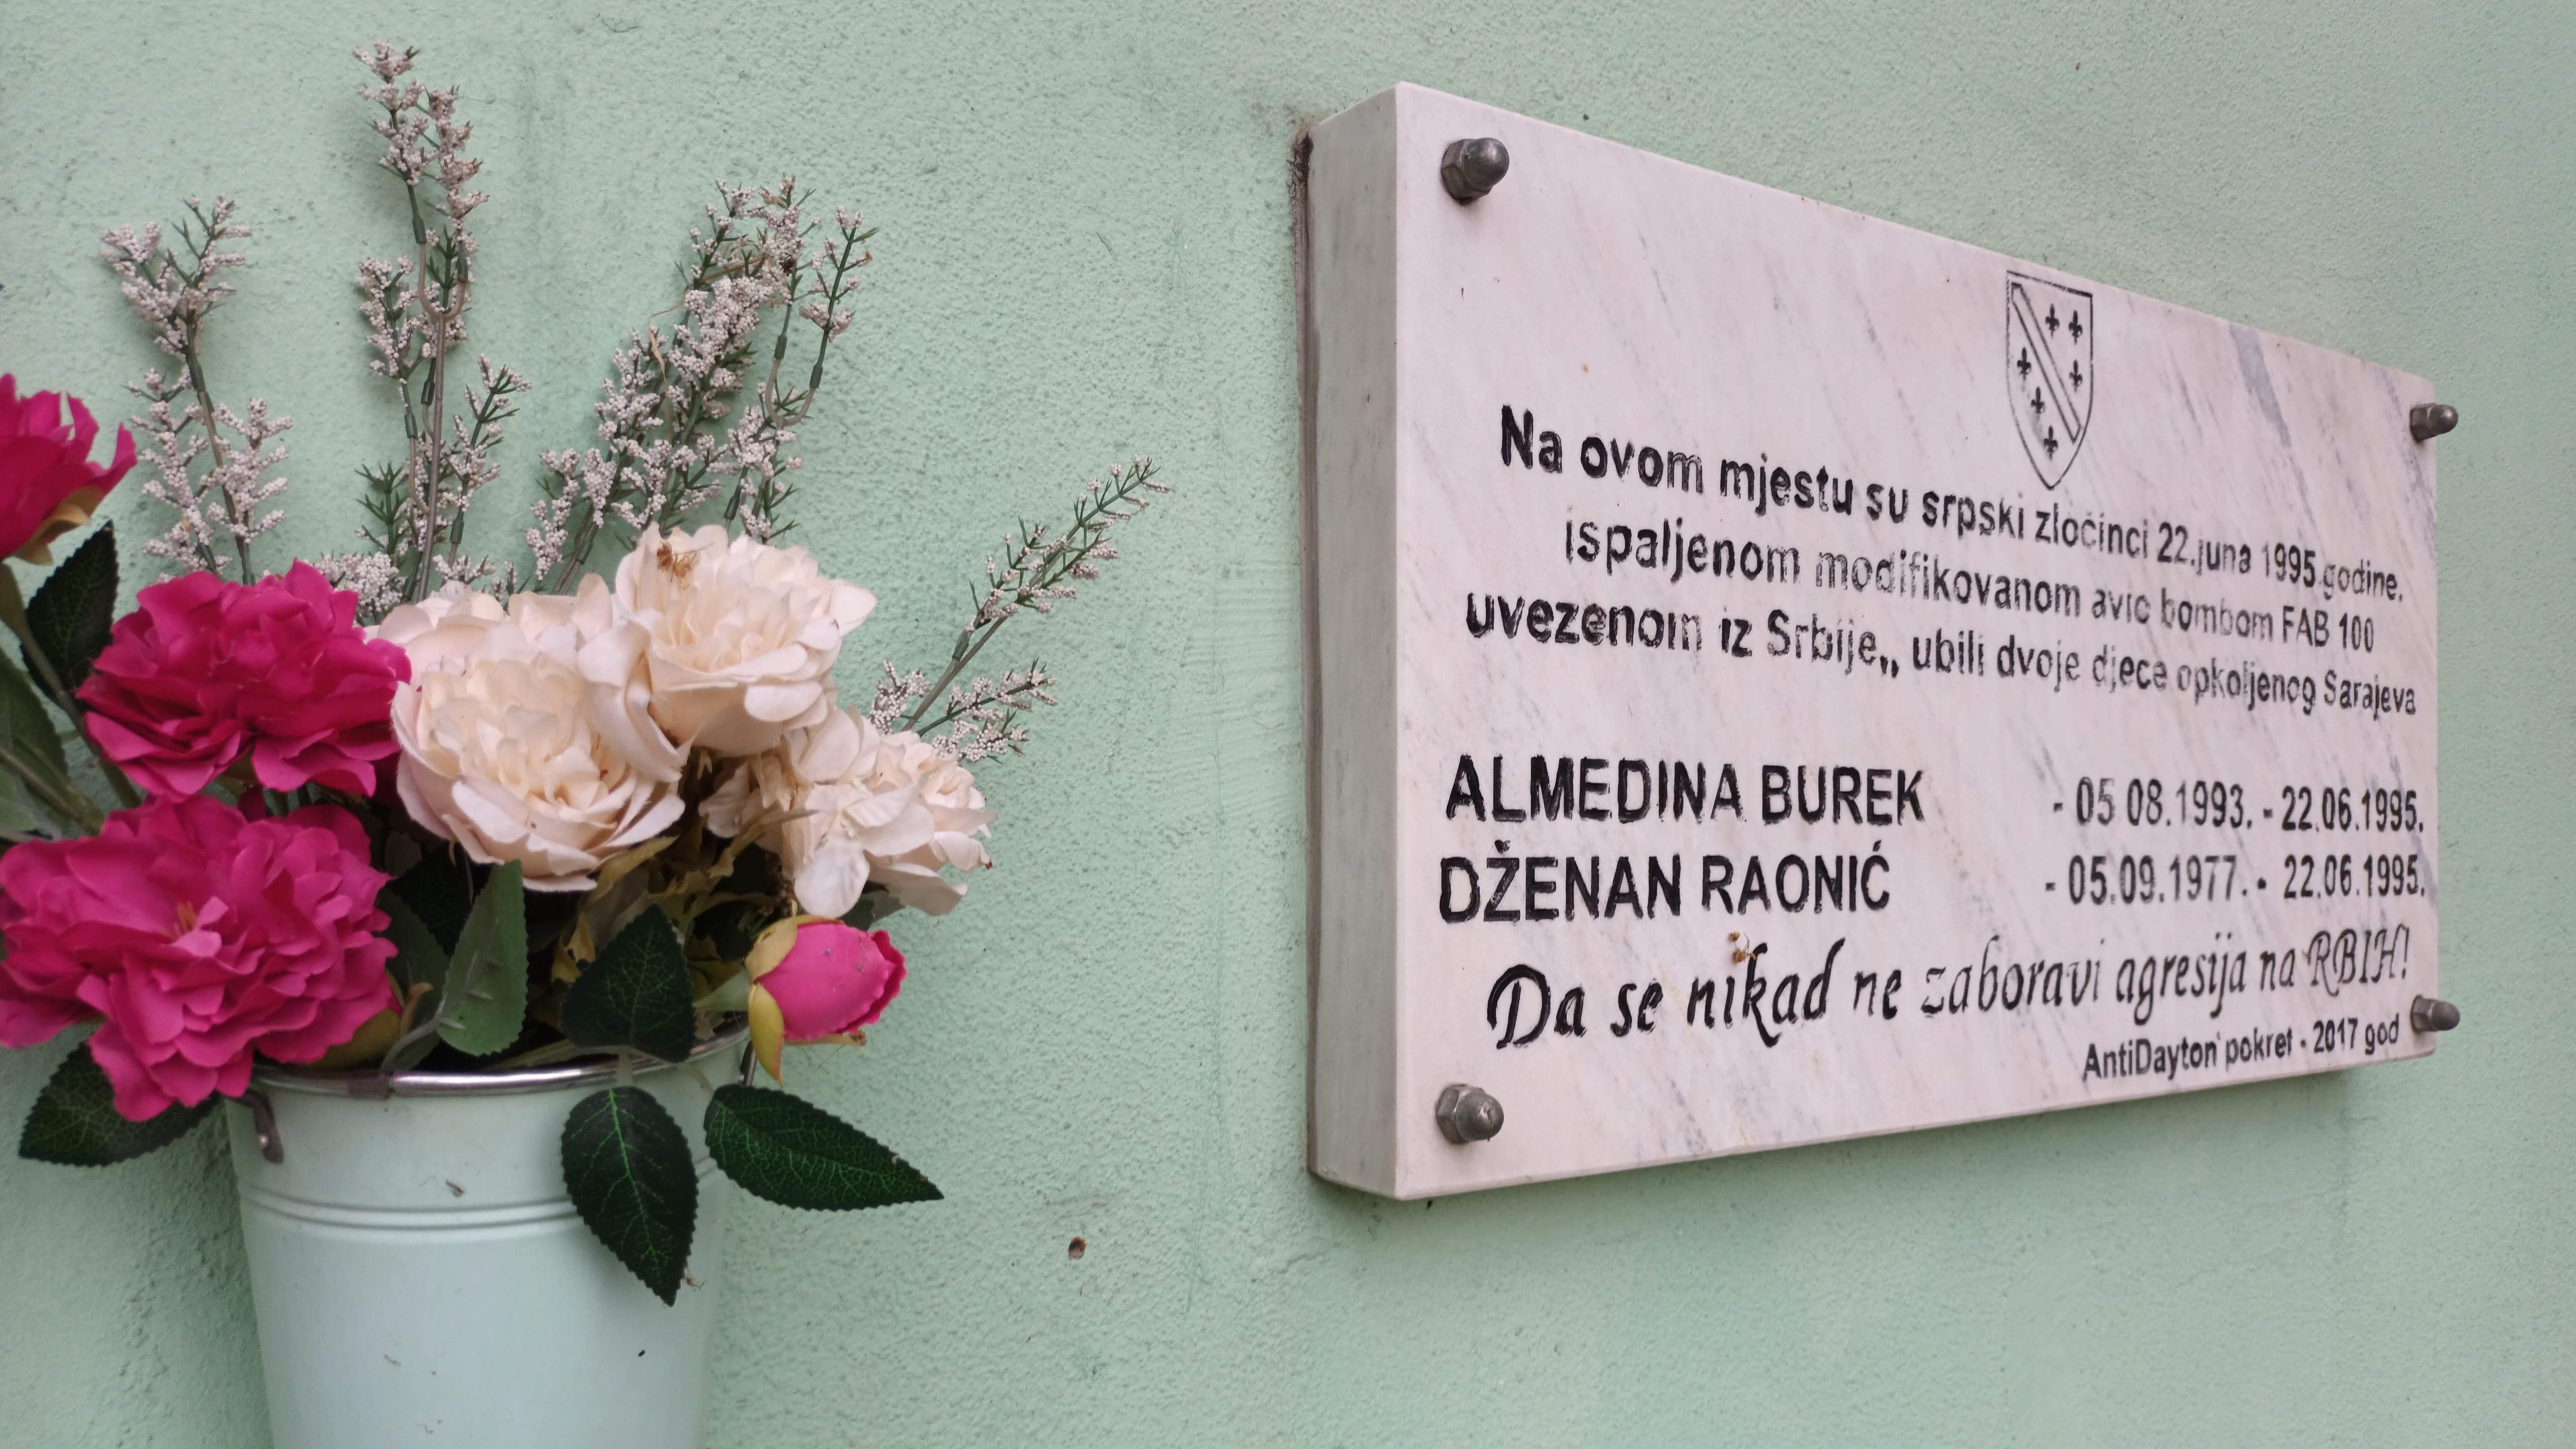 Obilježena 29. godišnjica smrti dvoje djece opkoljenog Sarajeva 